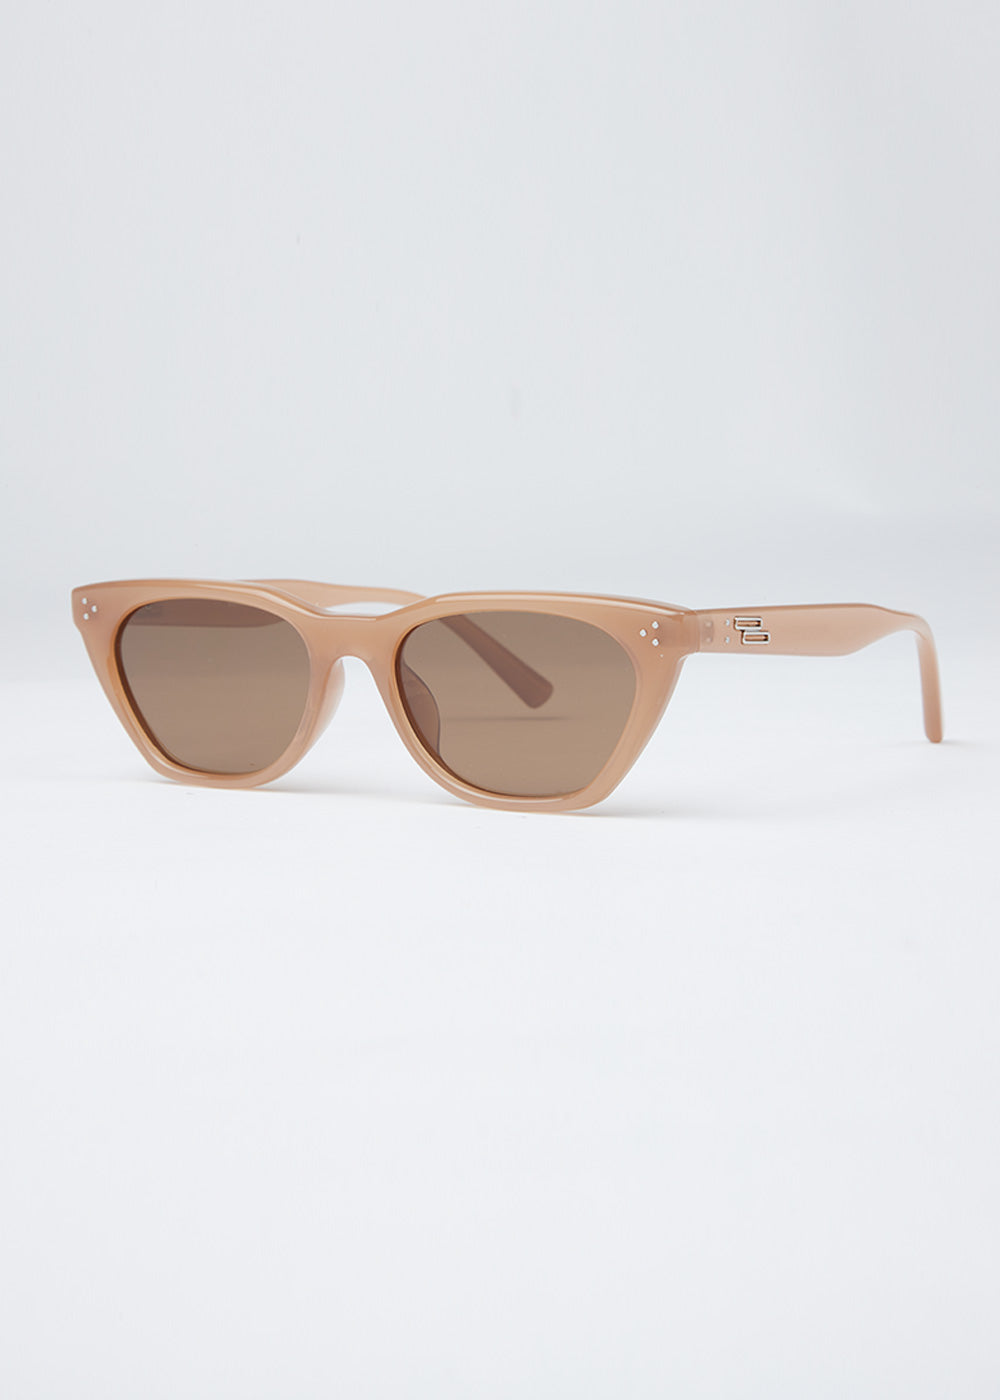 Light Beige Unisex Cat-eye Sunglasses